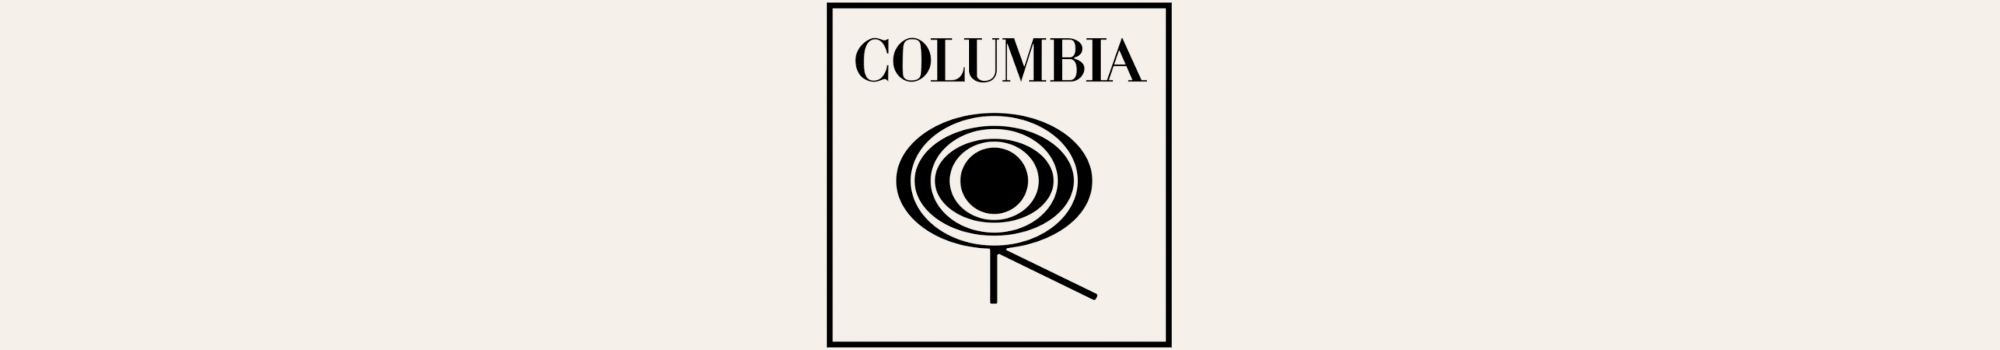 Columbia Records logotyp